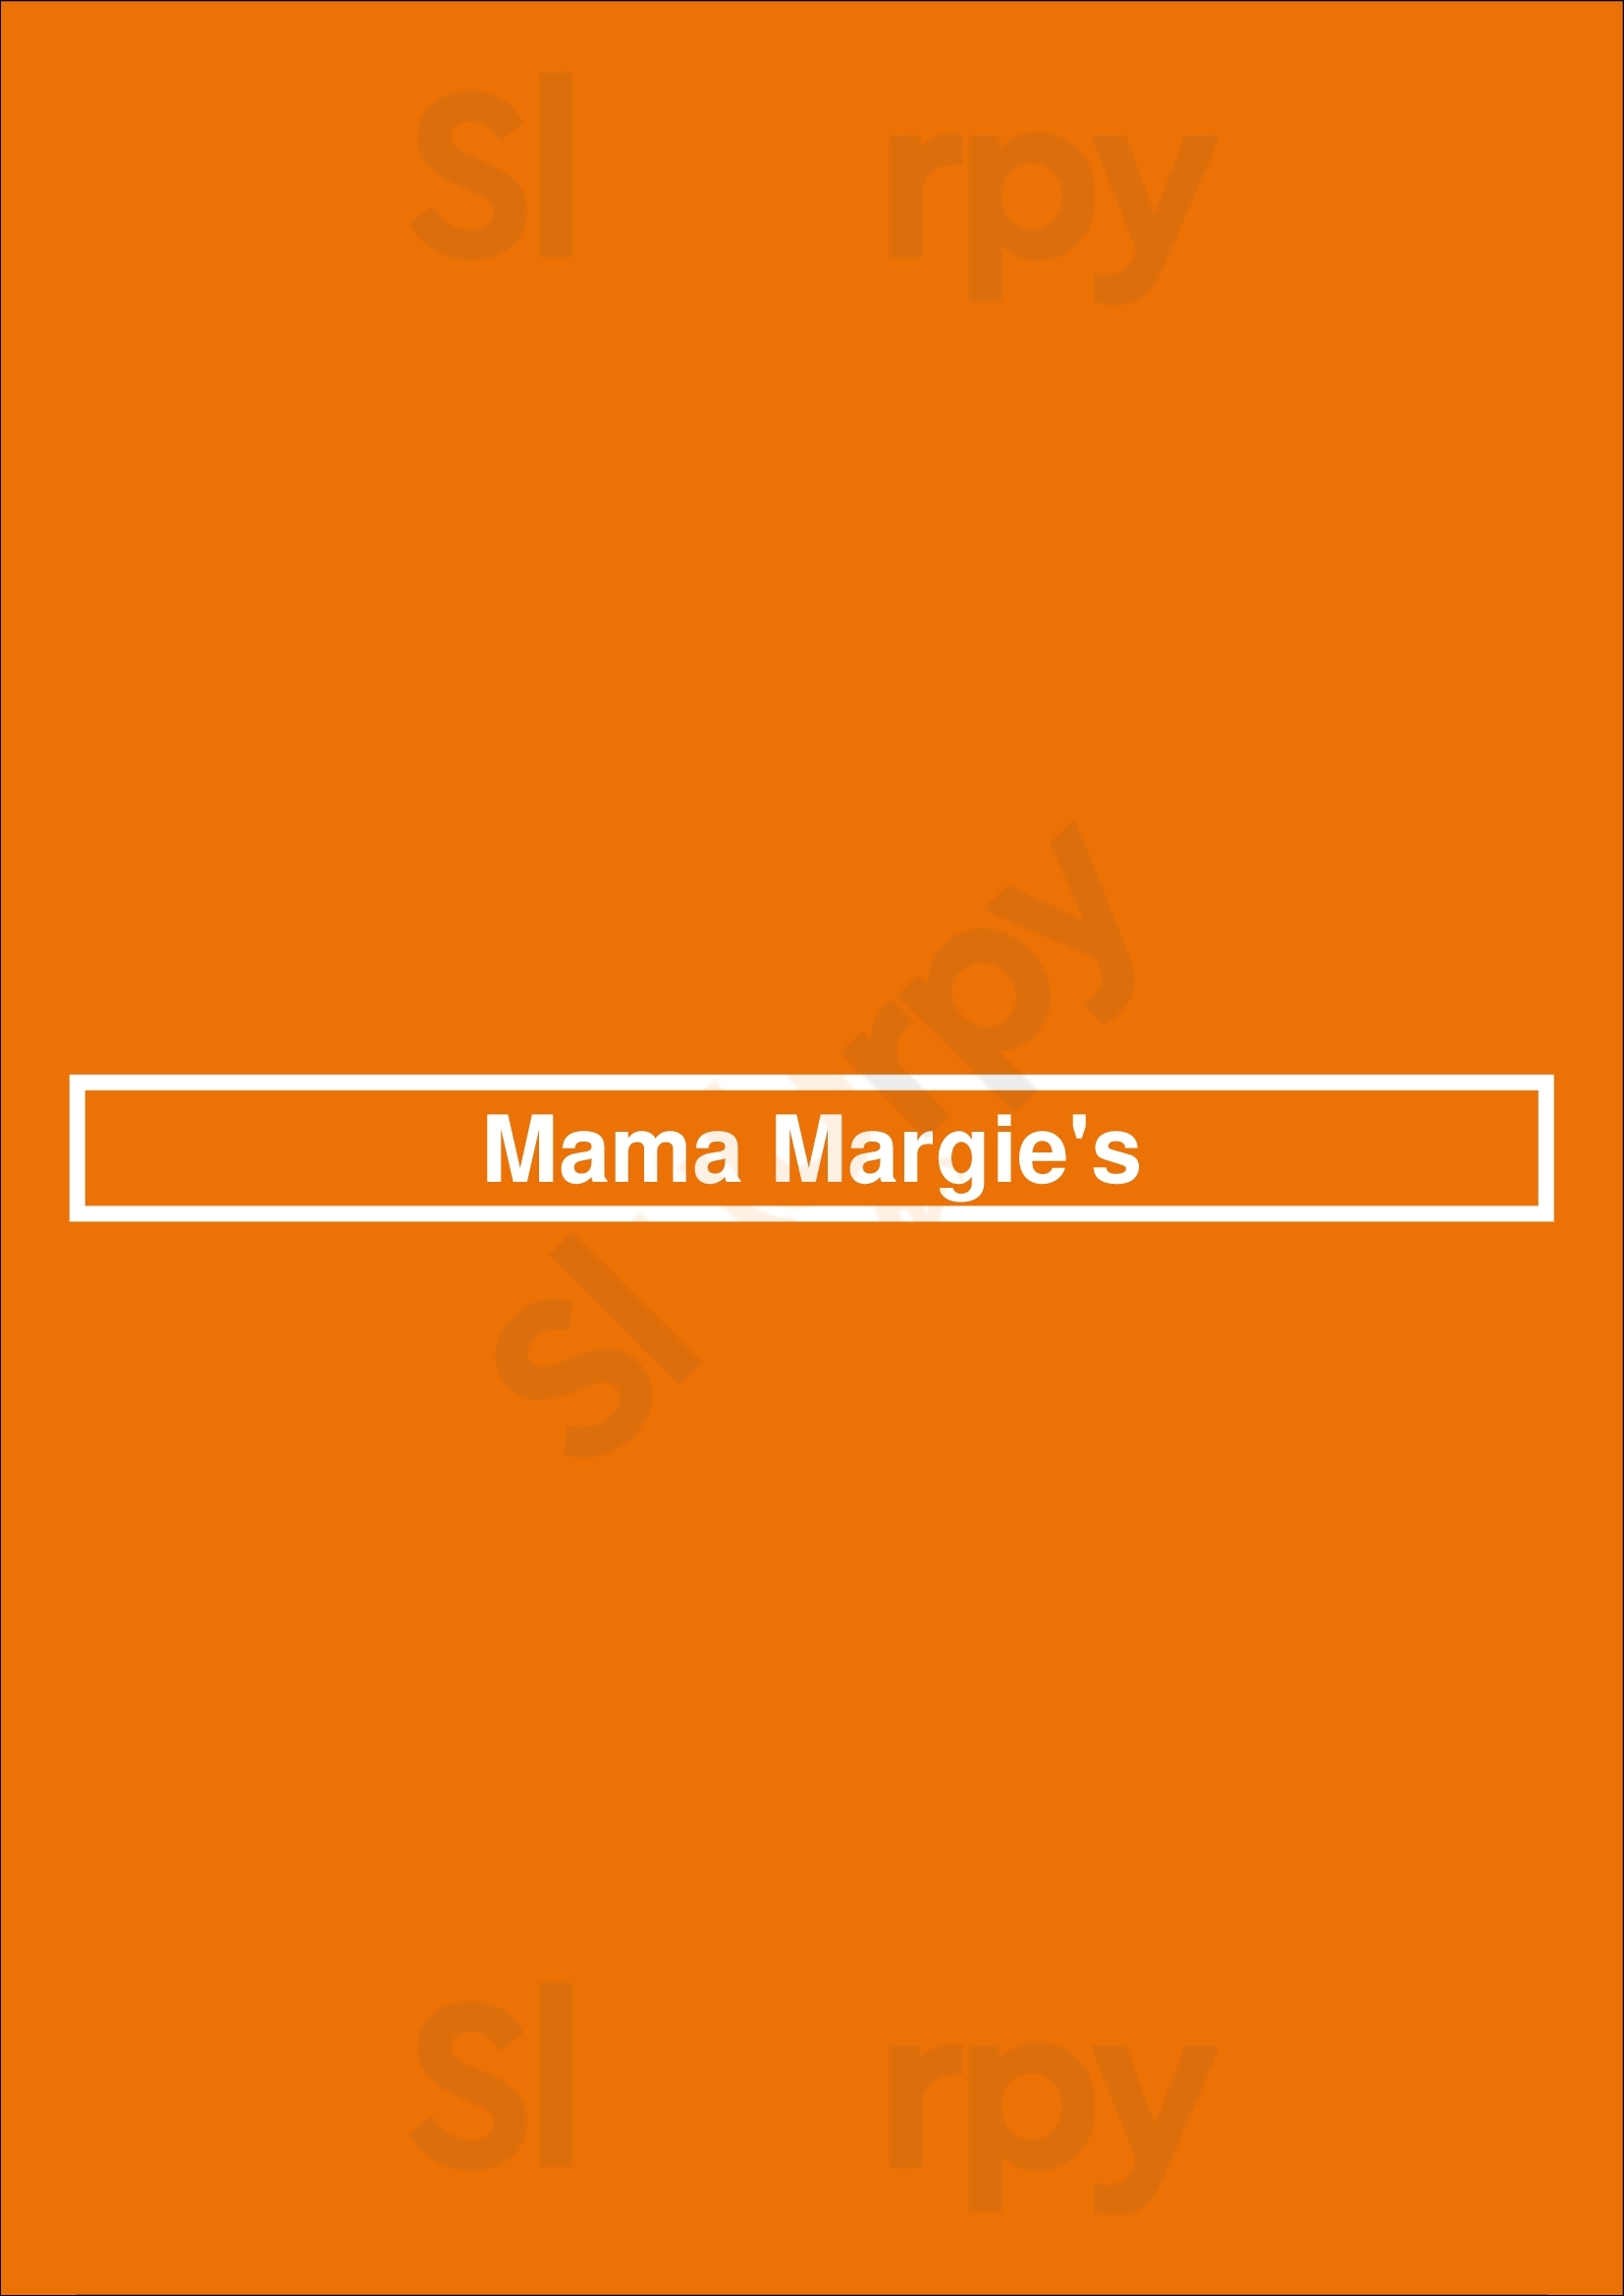 Mama Margie's San Antonio Menu - 1